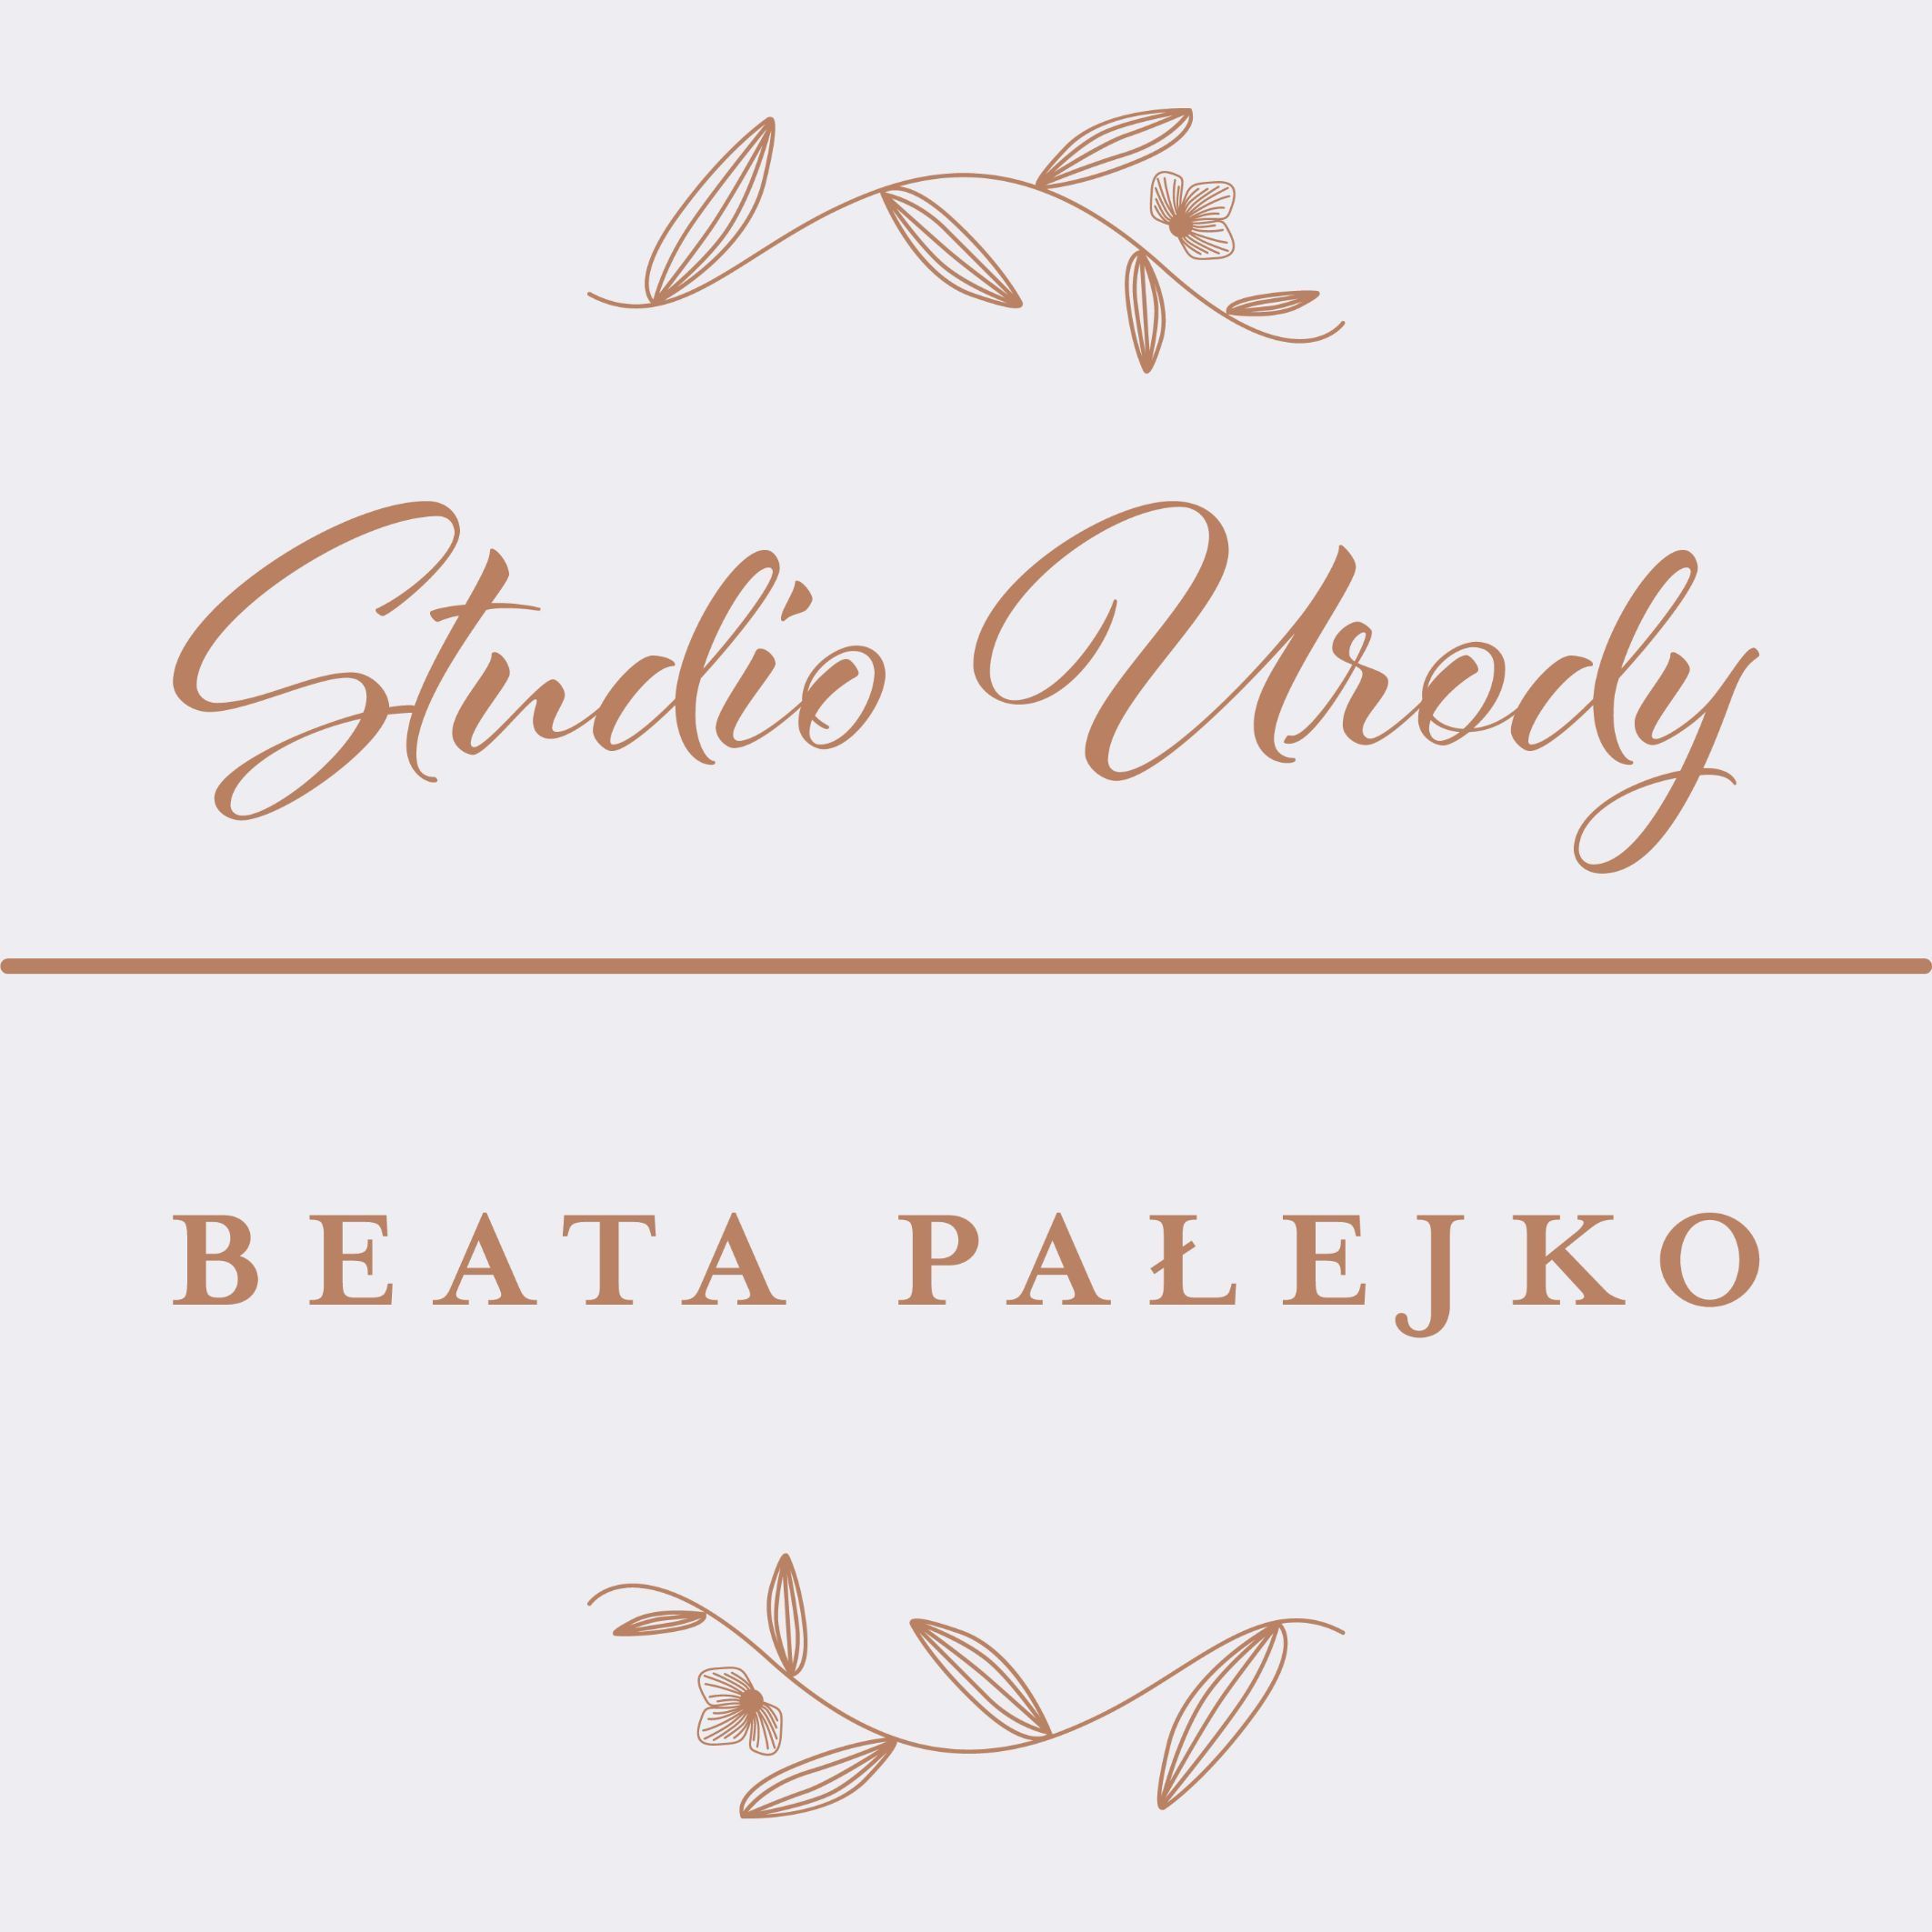 Studio Urody Beata Pałejko, Stanisława Leszczyńskiego 136, 85-137, Bydgoszcz